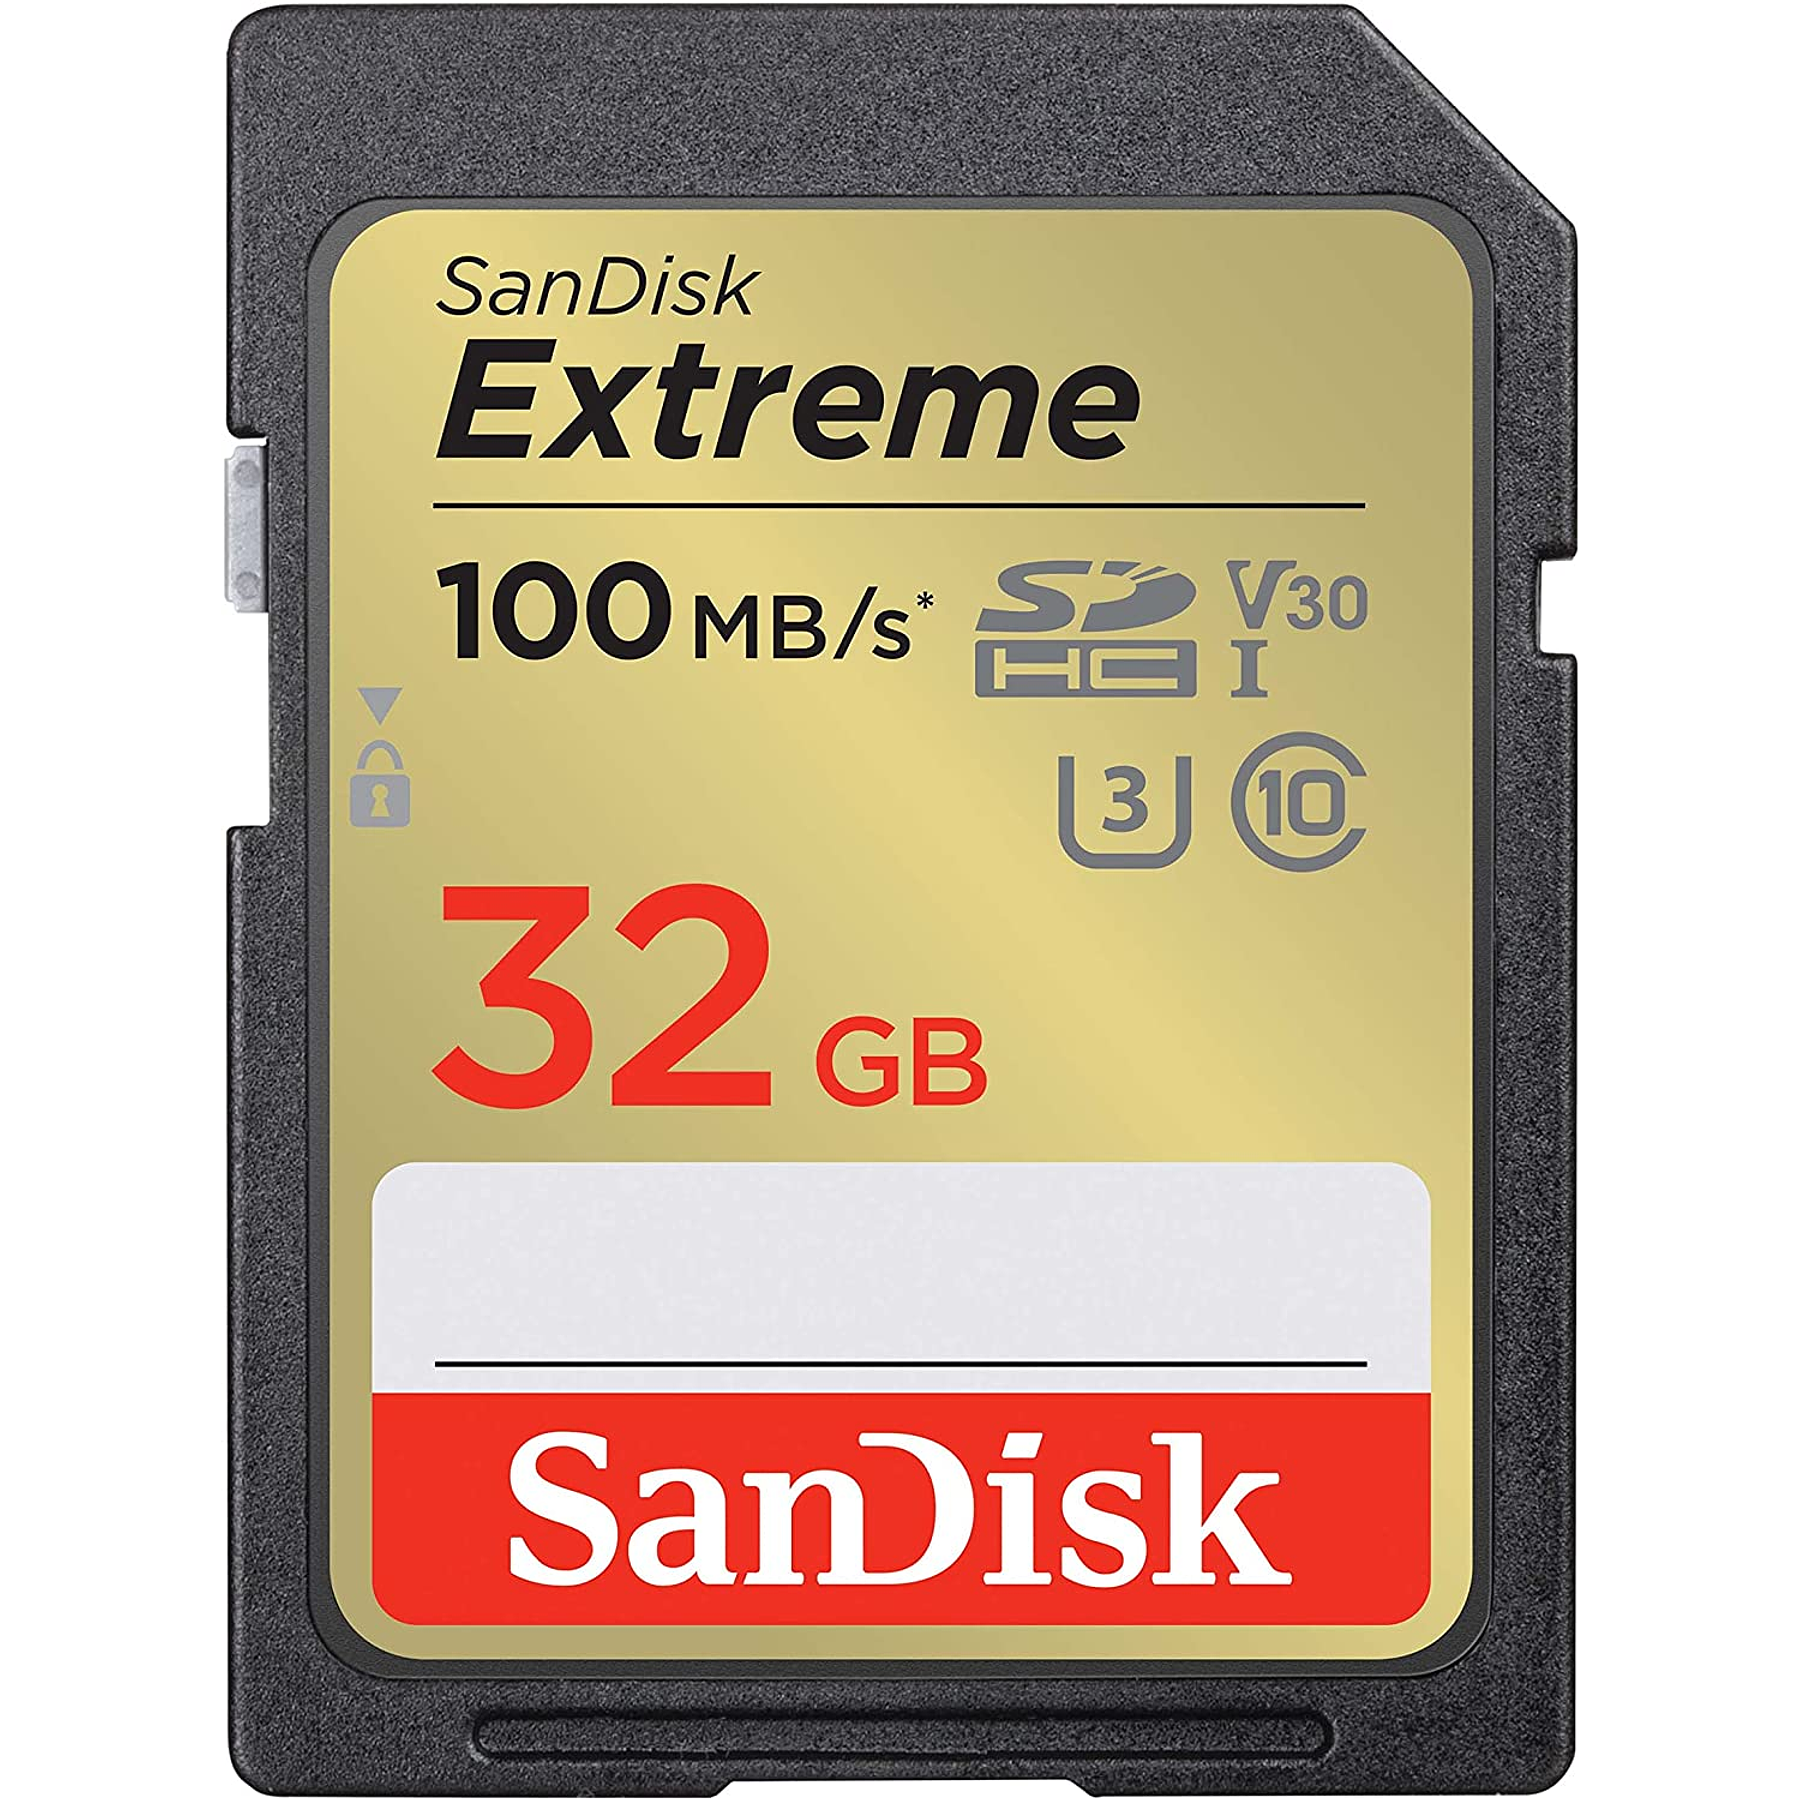 TARJETA DE MEMORIA SANDISK SD 32GB EXTREME MODELO # SDSDXVT-032G